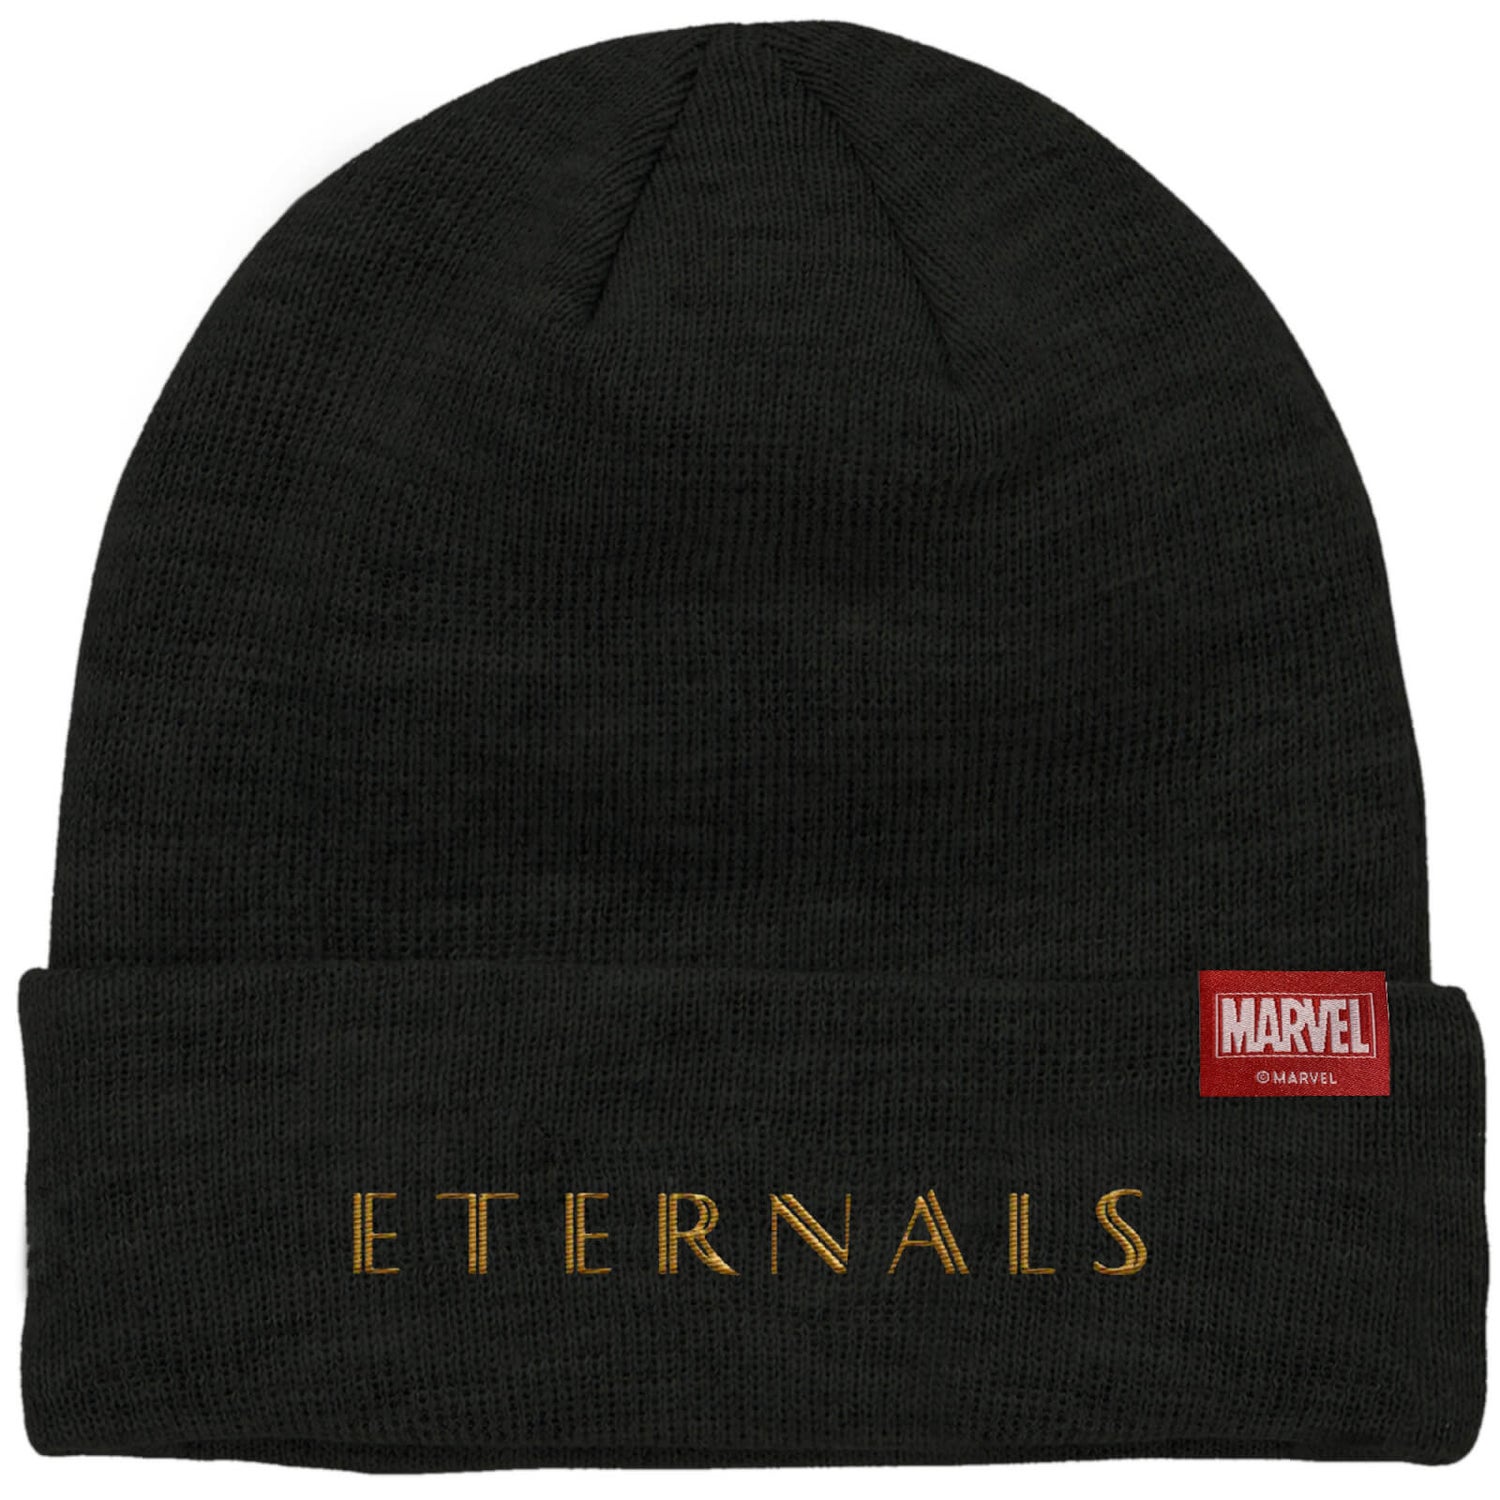 Marvel Eternals Typography Beanie - Black